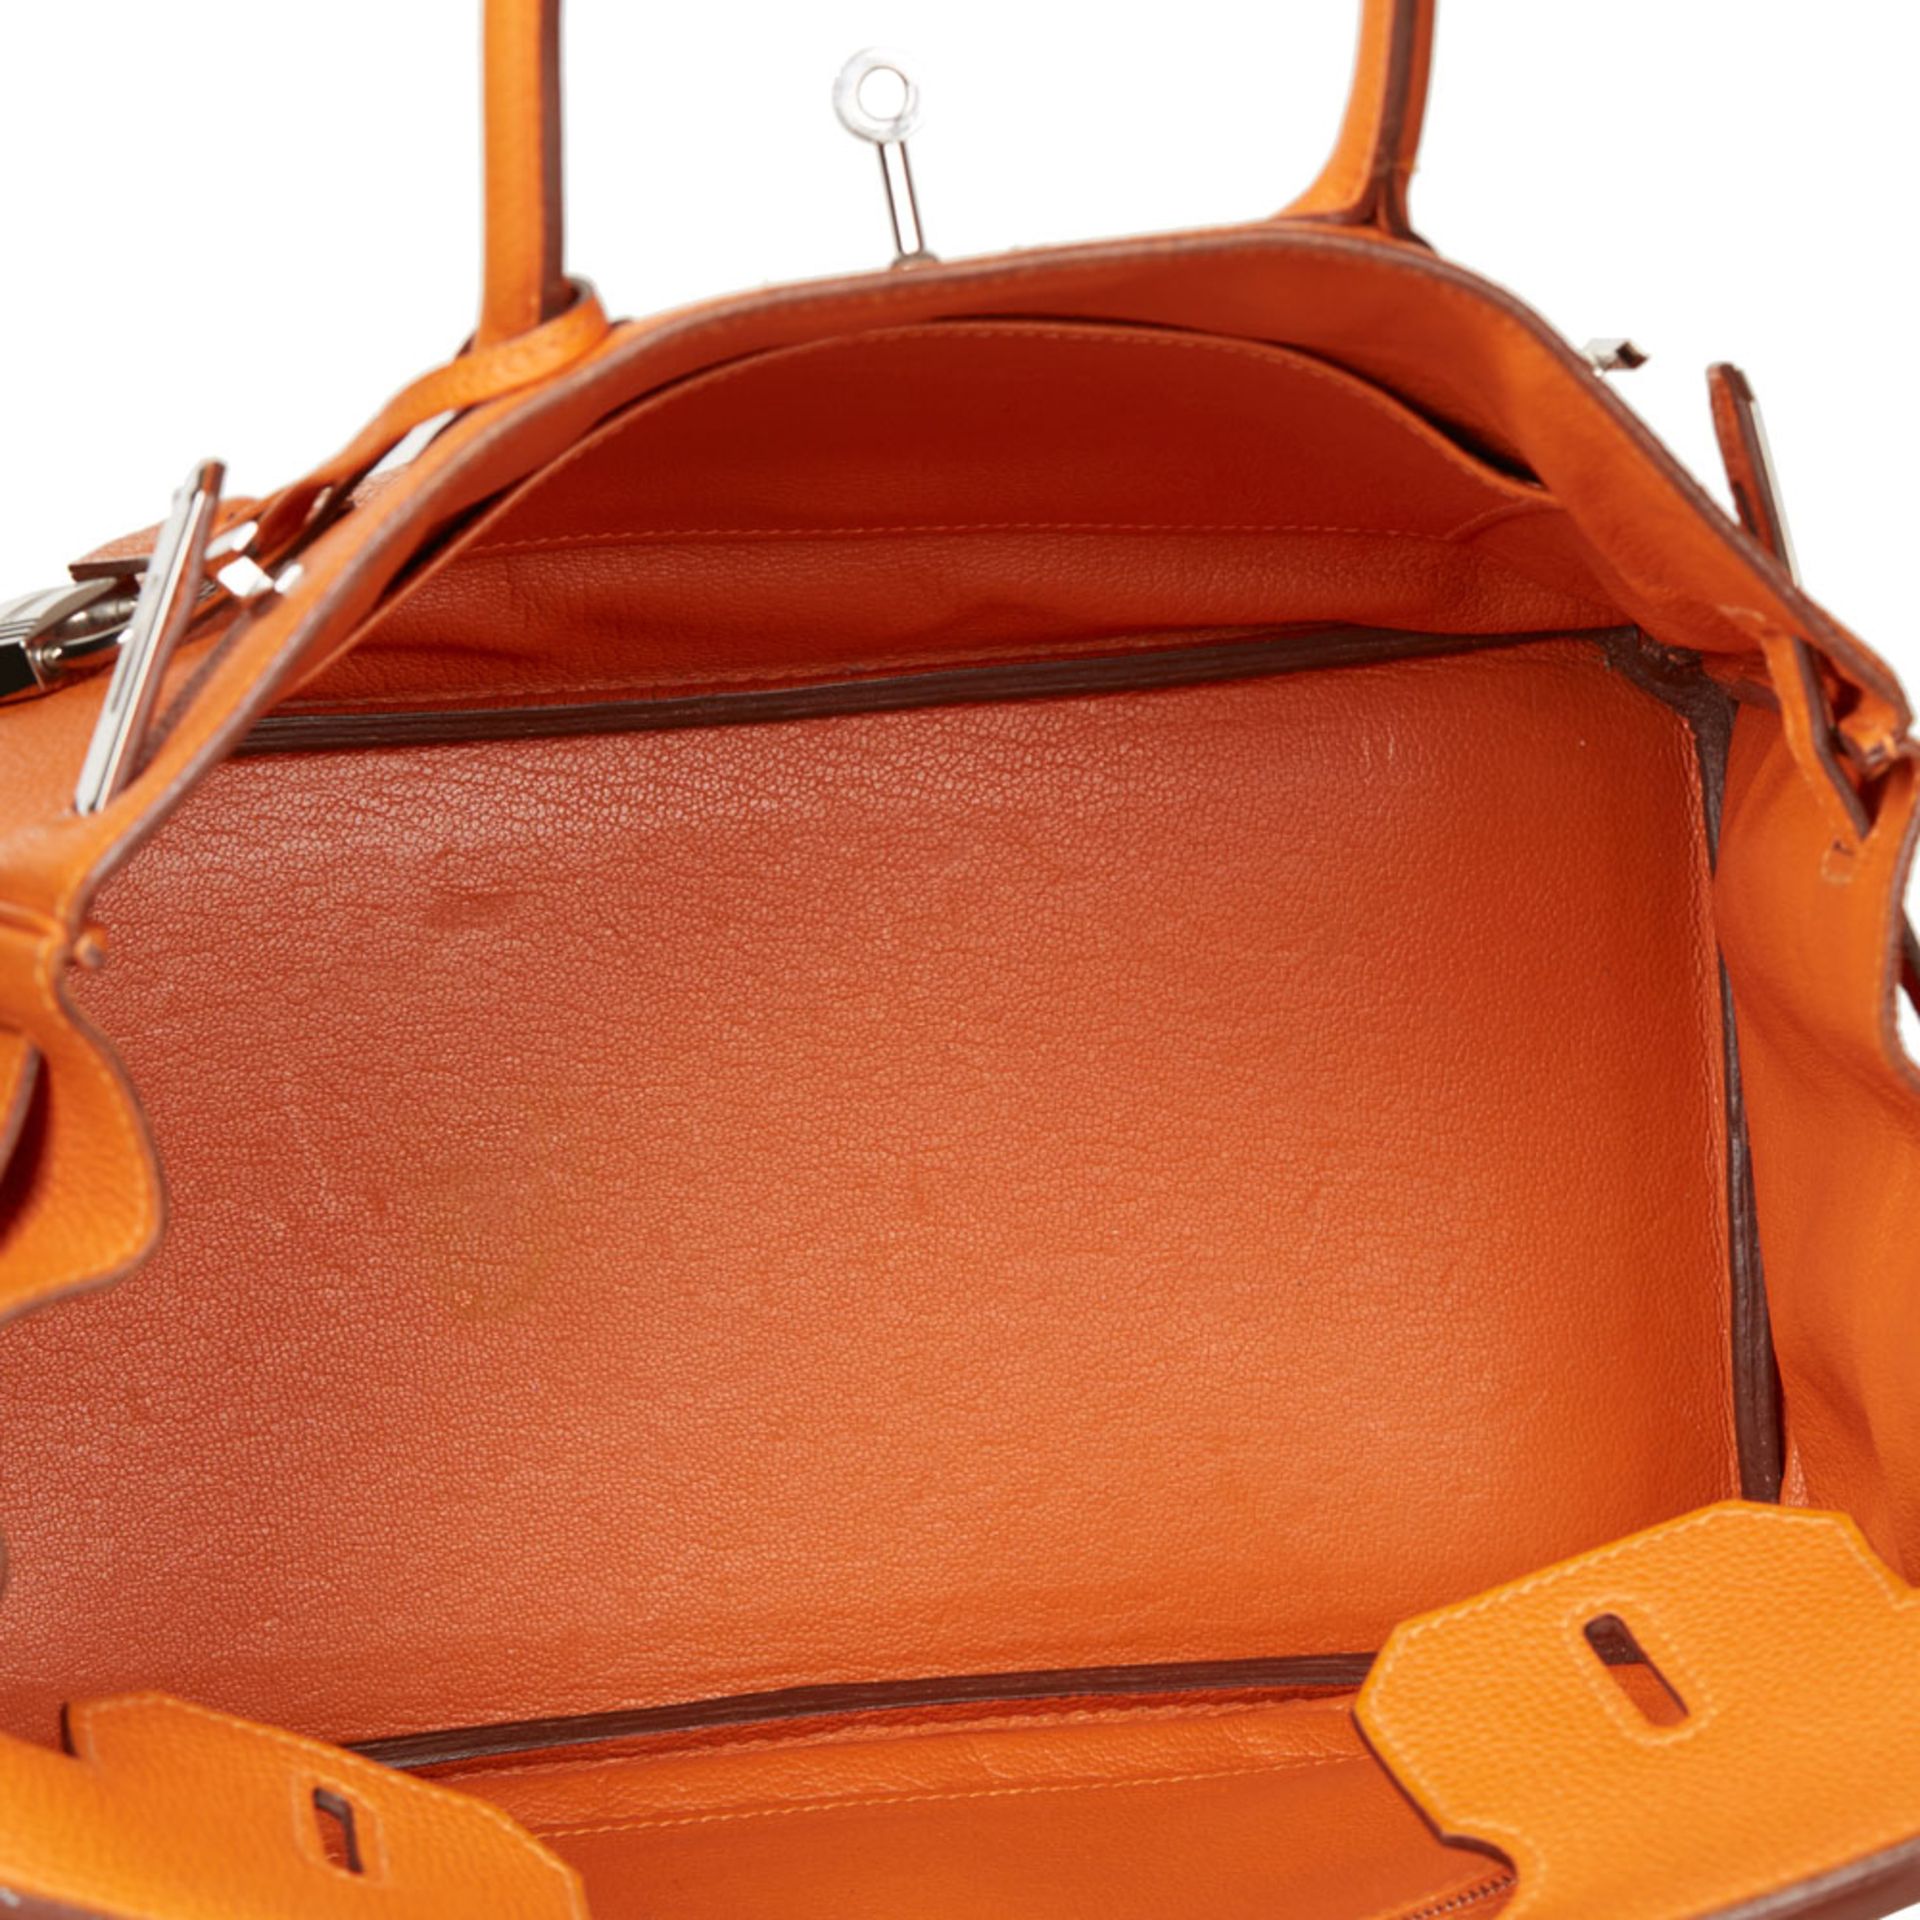 Orange H Togo Leather Birkin 30cm - Image 7 of 9